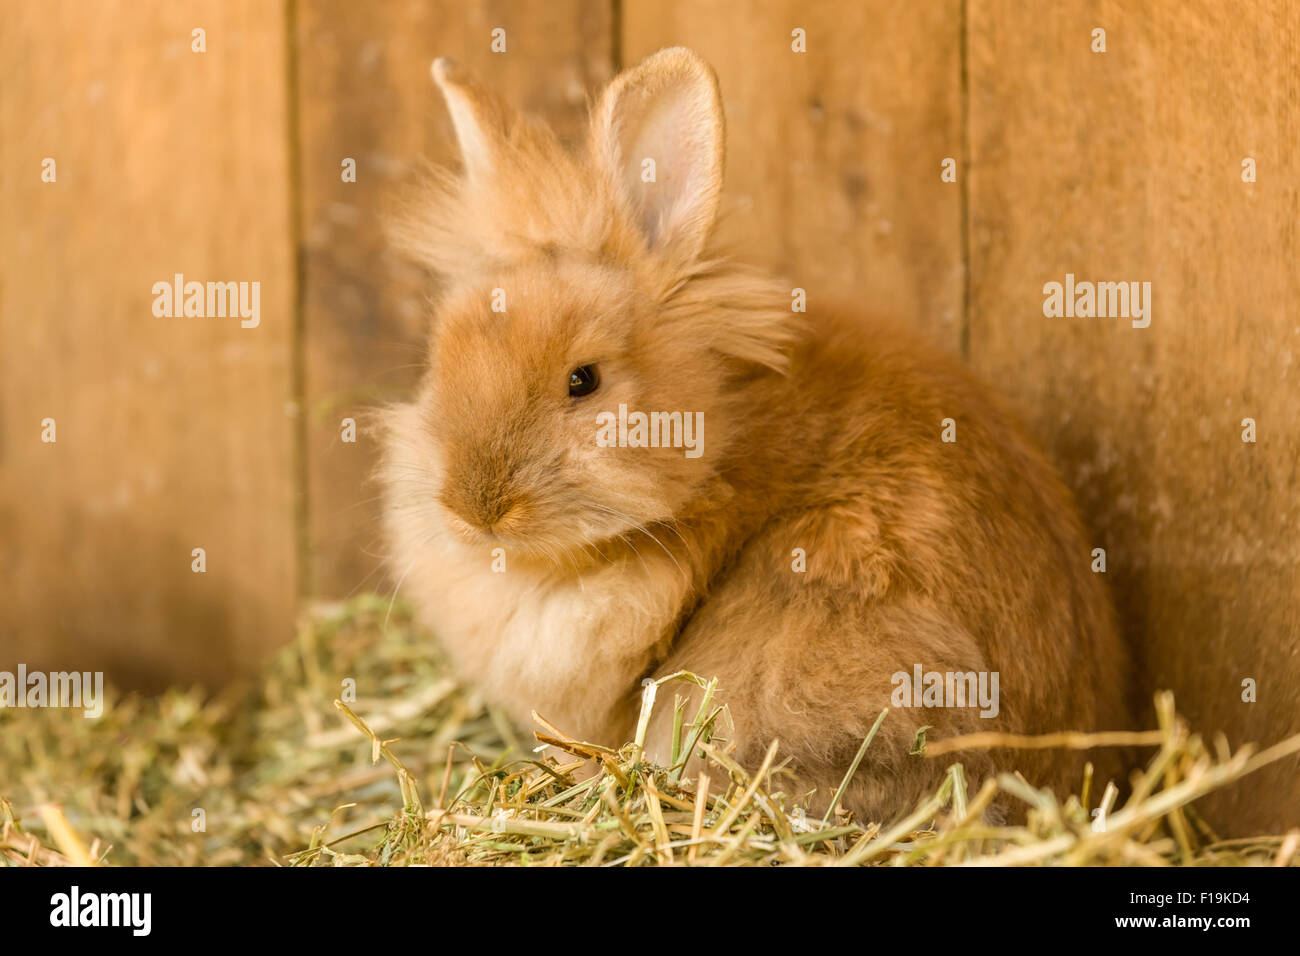 Soft, furry bunny at Fox Hollow Farm near Issaquah, Washington, USA Stock Photo